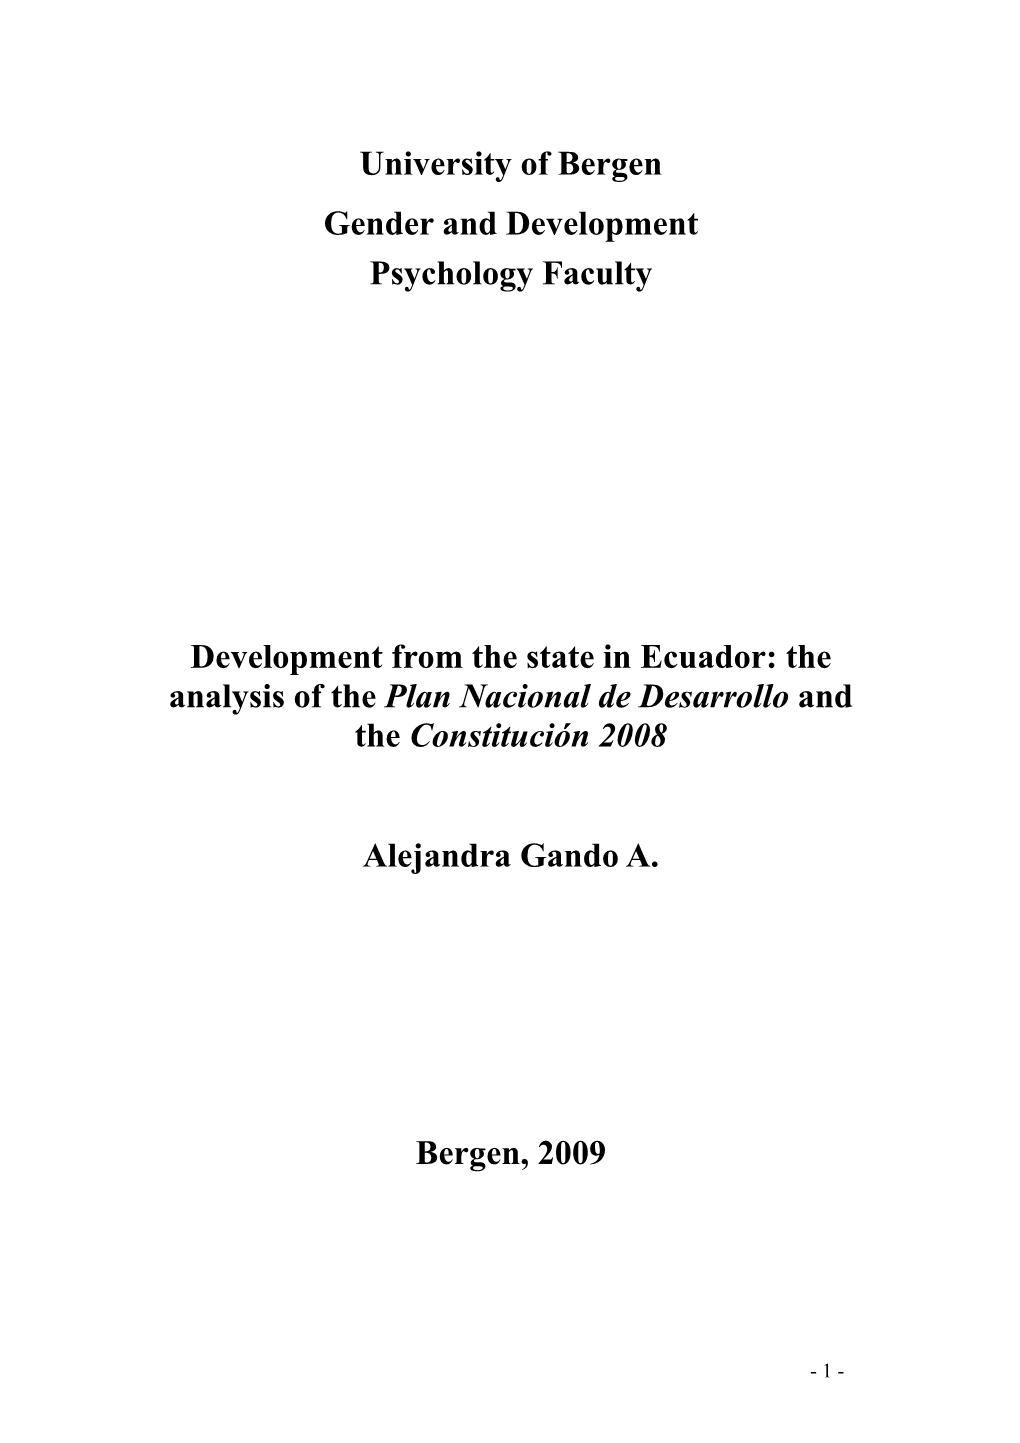 The Analysis of the Plan Nacional De Desarrollo and the Constitución 2008